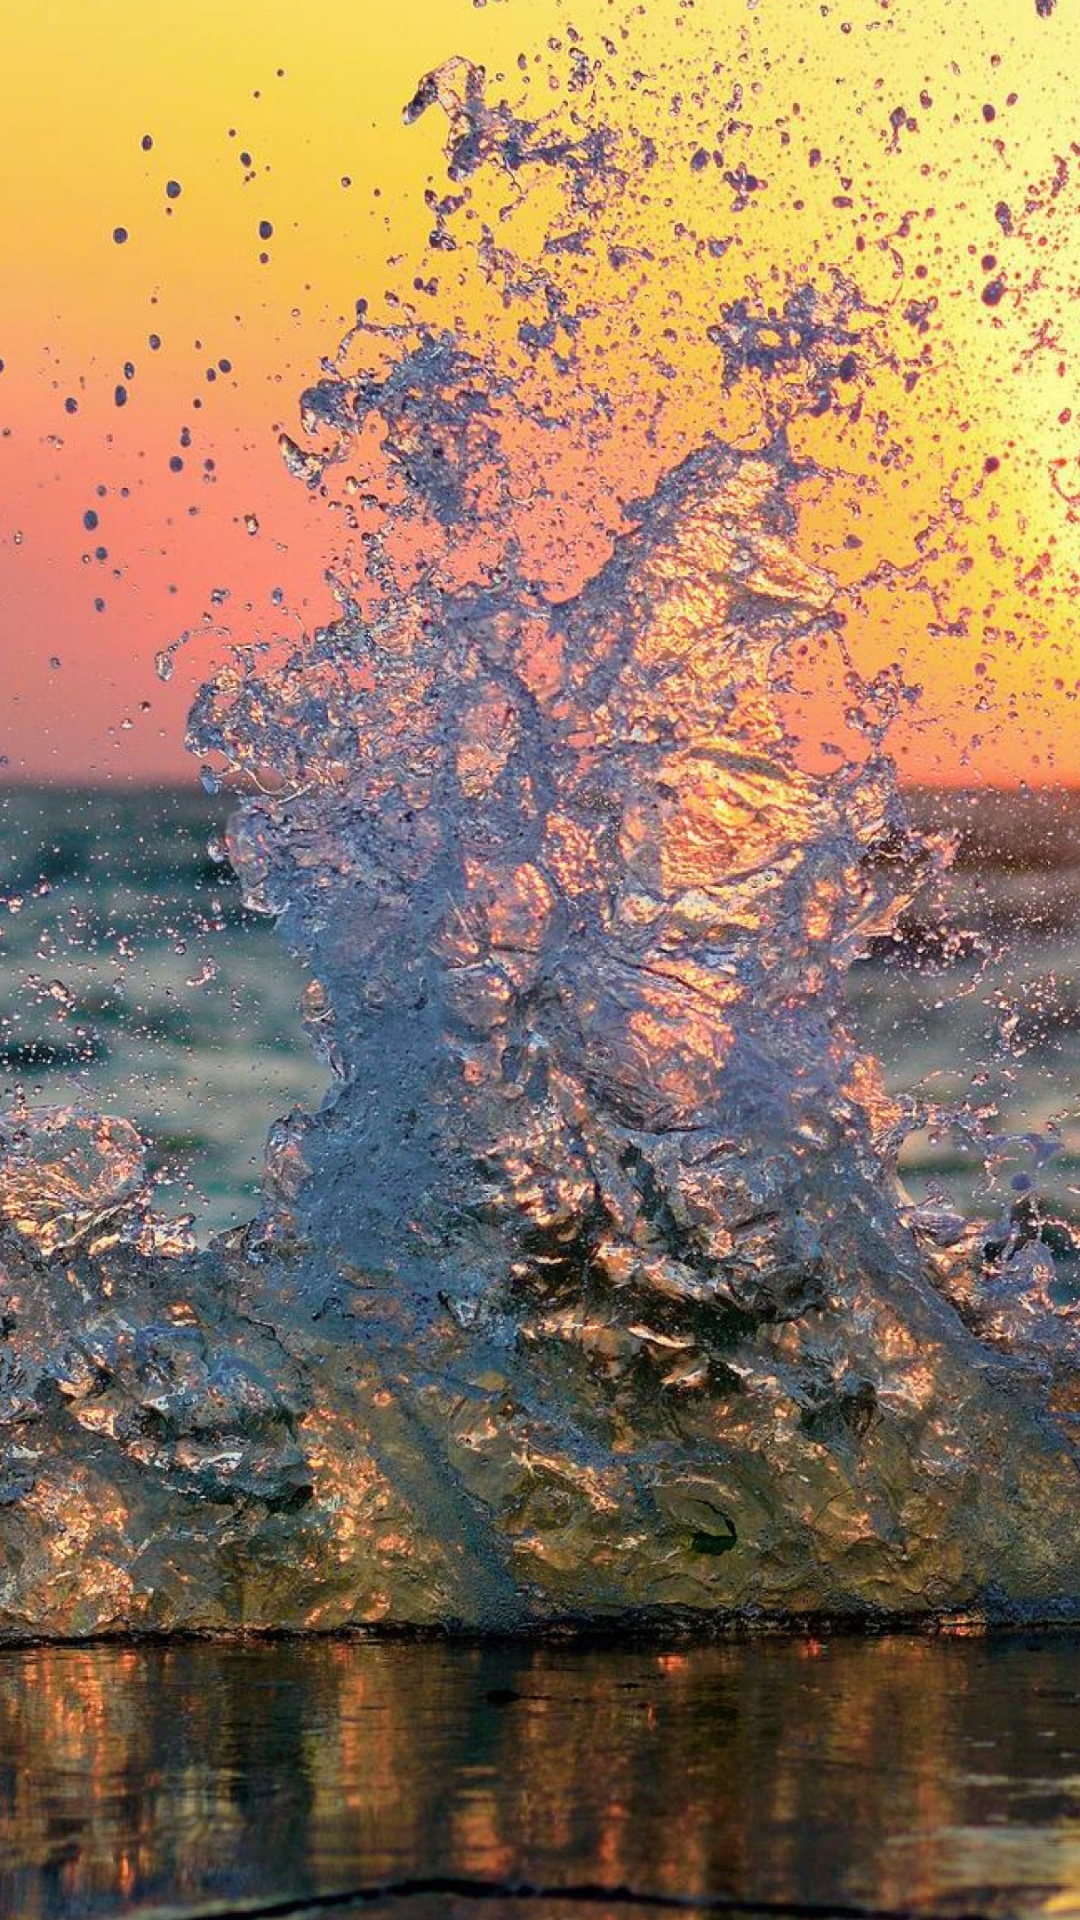 Brauner Baumstamm Auf Dem Wasser Bei Sonnenuntergang. Wallpaper in 1080x1920 Resolution